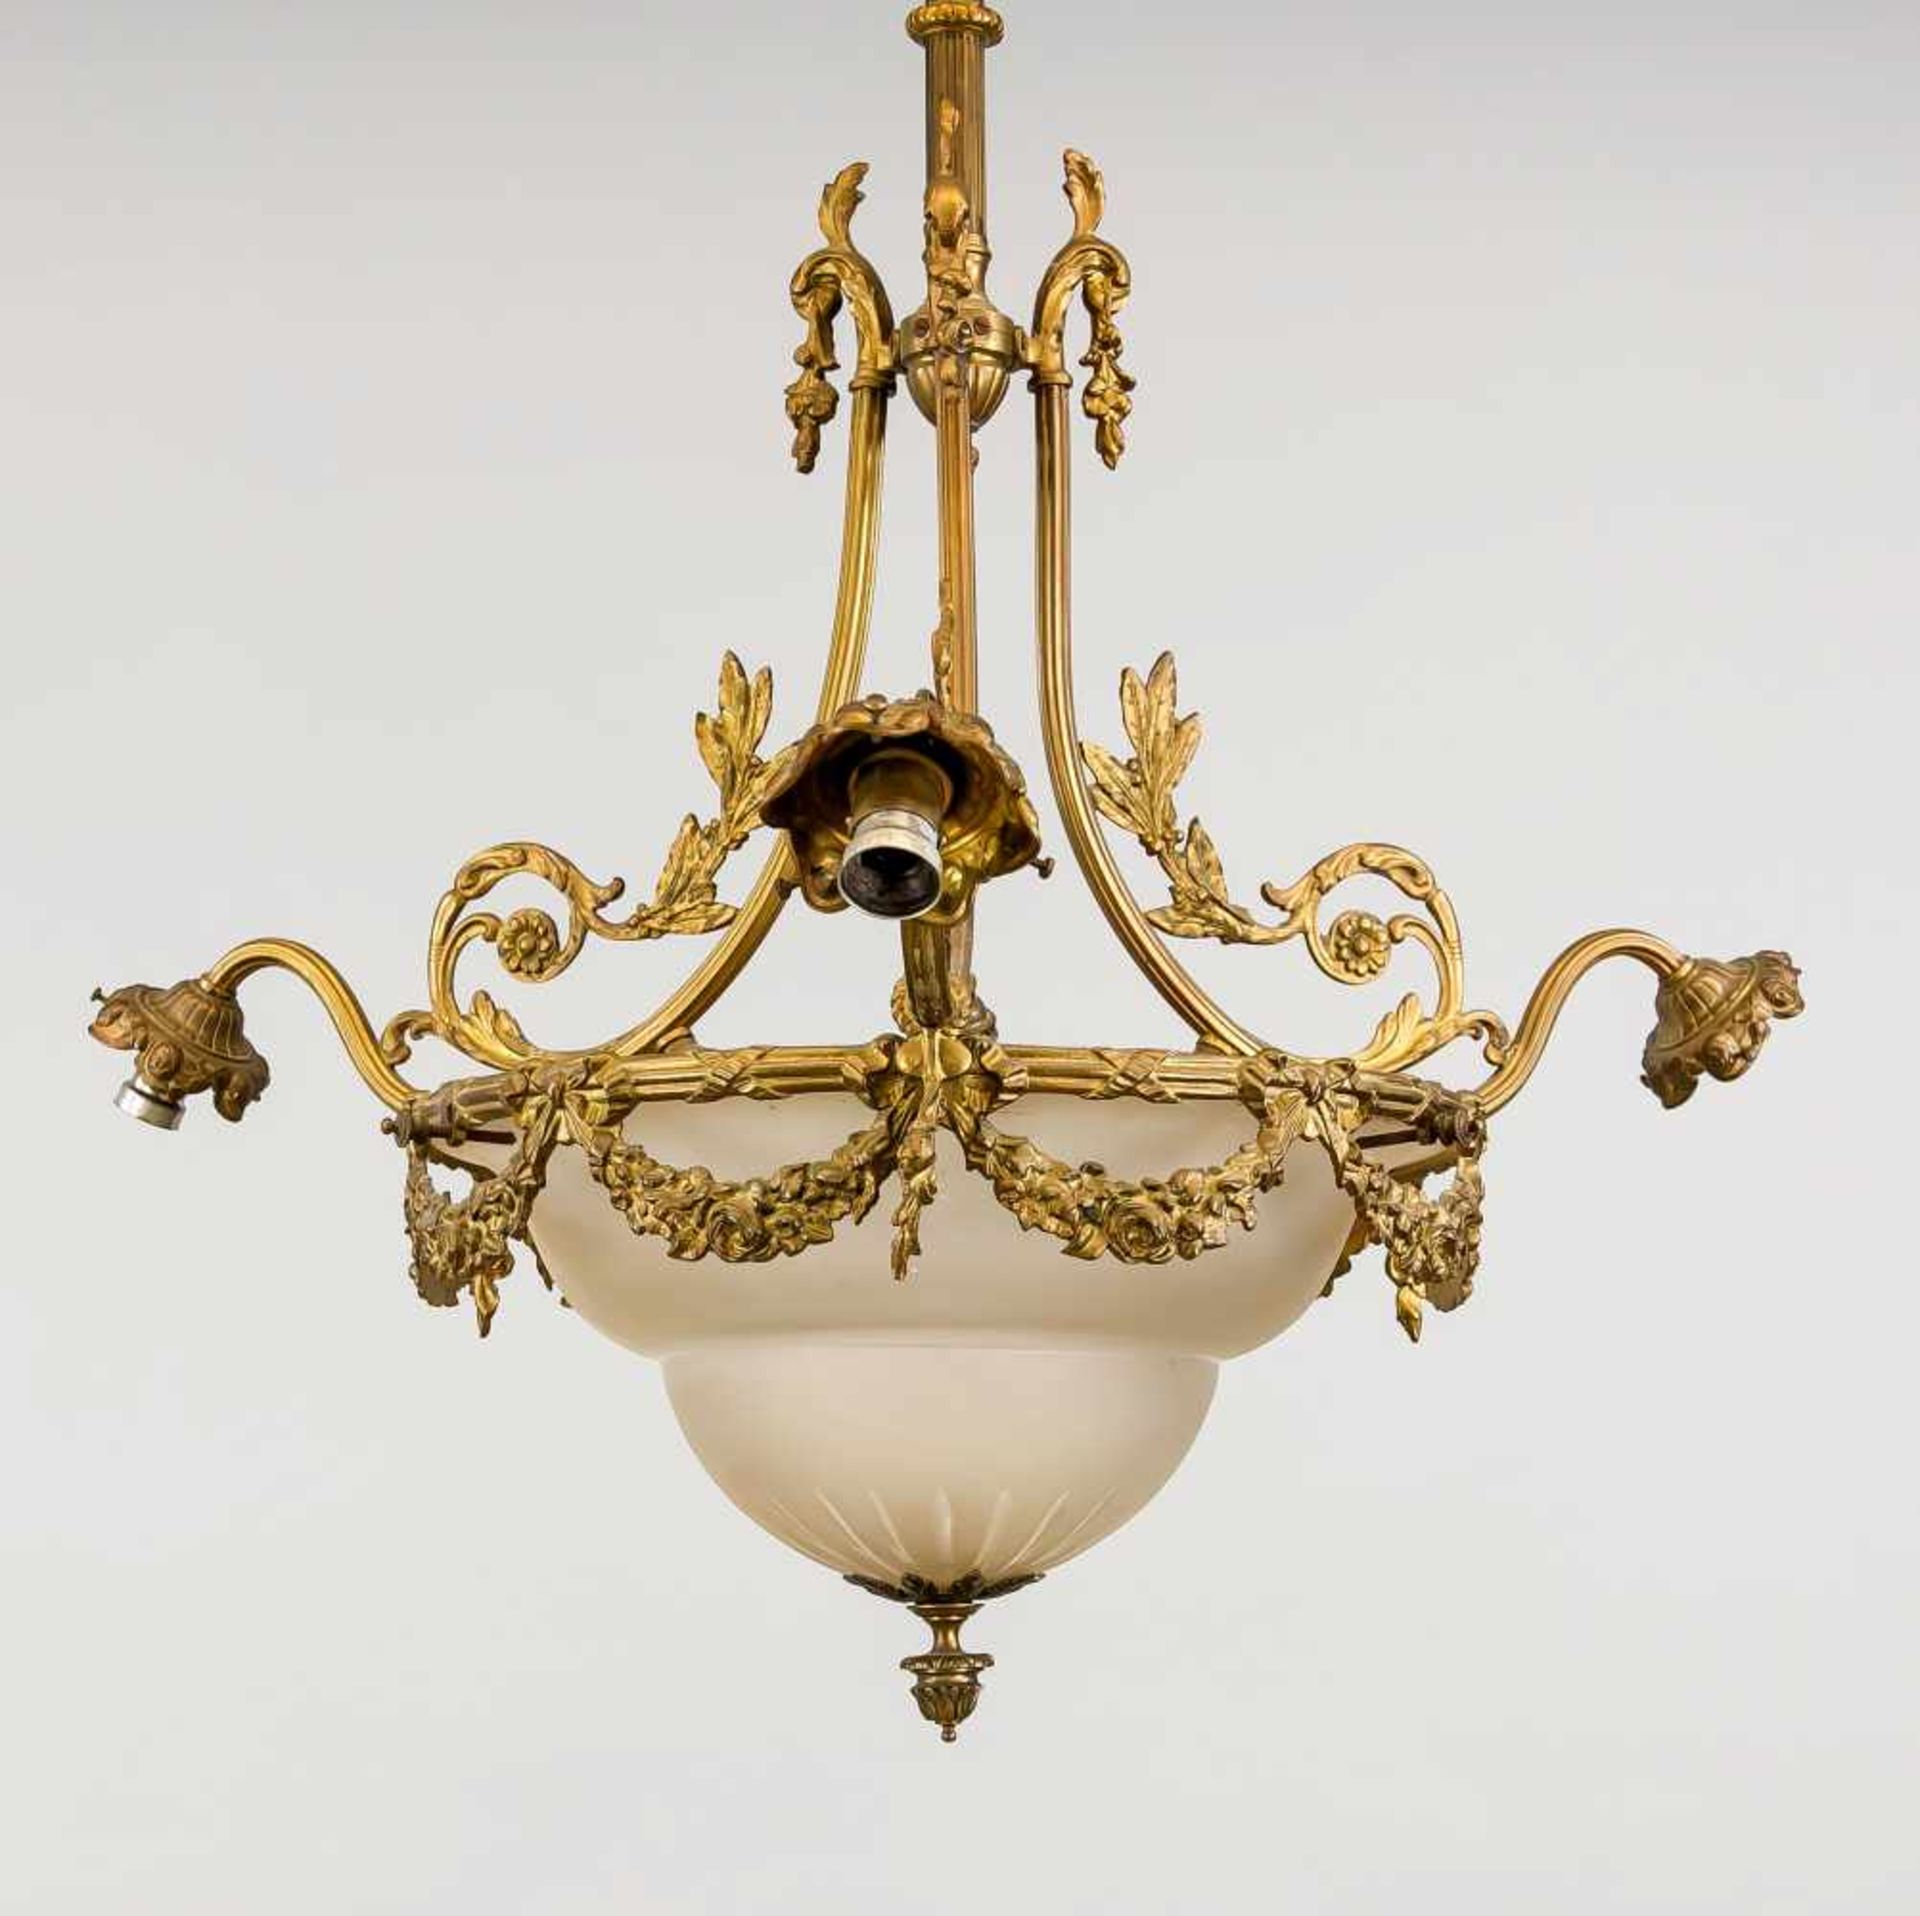 Deckenlampe, Ende 19. Jh., Bronze mit Restvergoldeung, Milchglasdiffusor. Dreipassiges